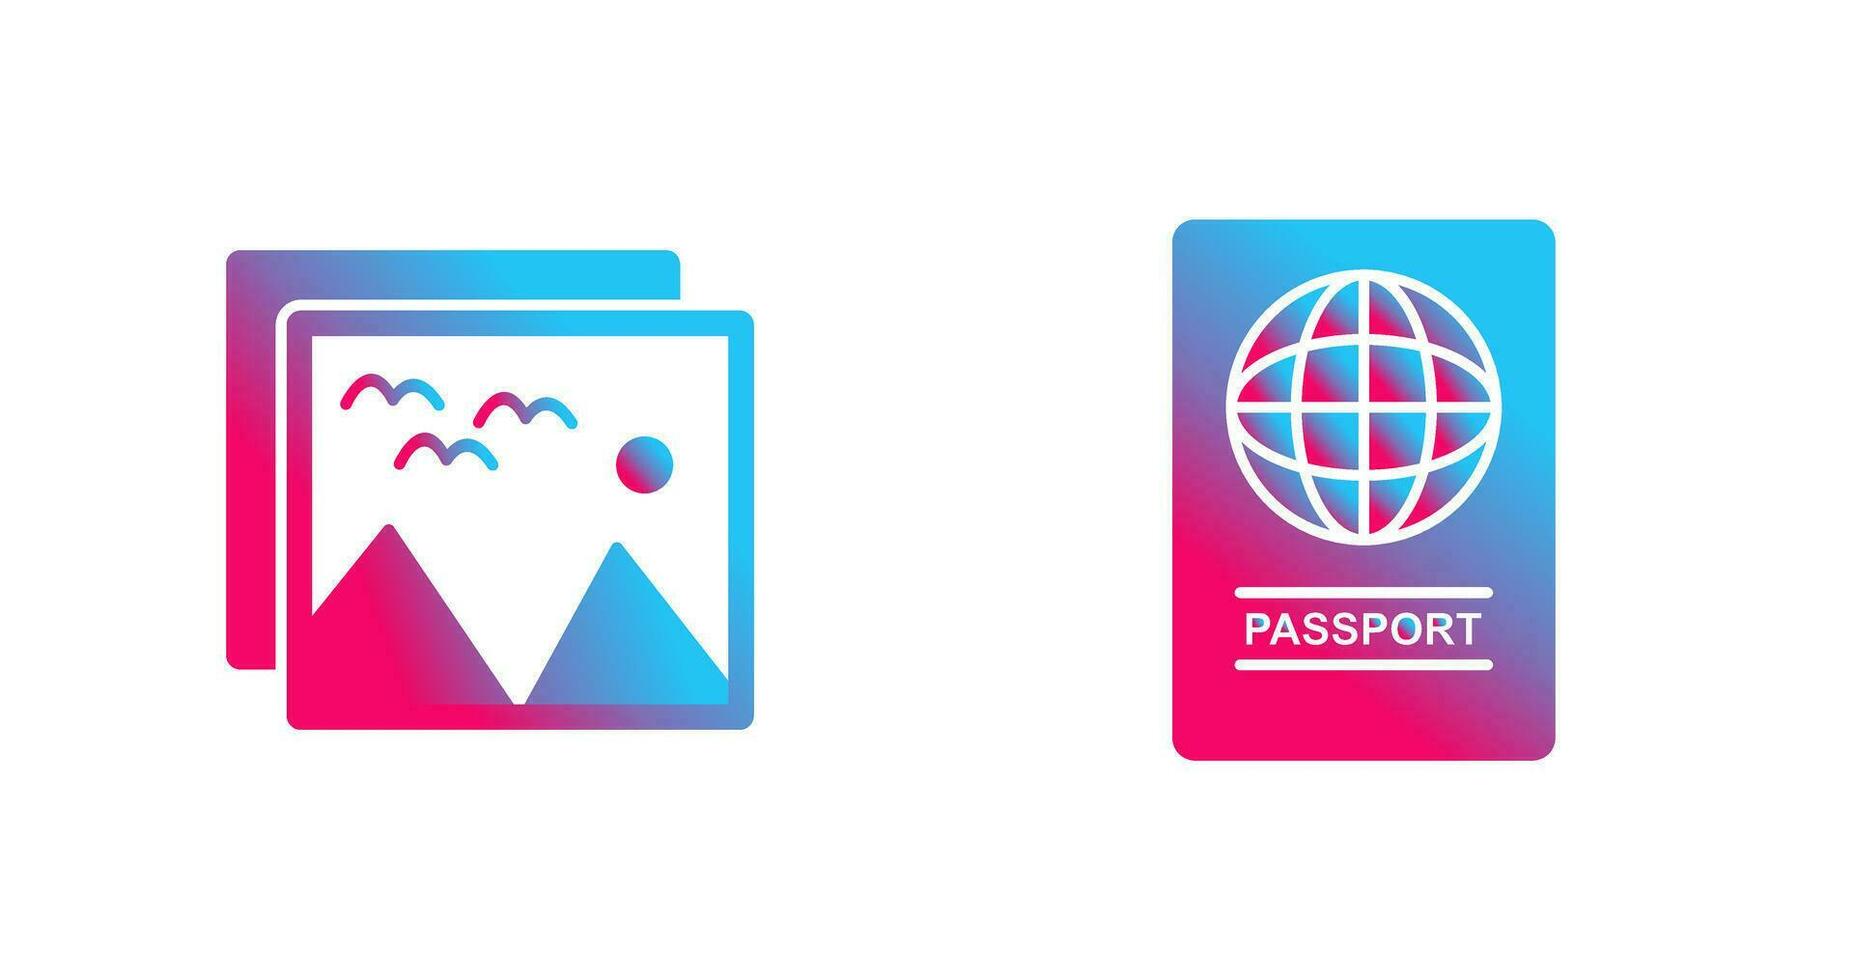 immagini e passaporto icona vettore